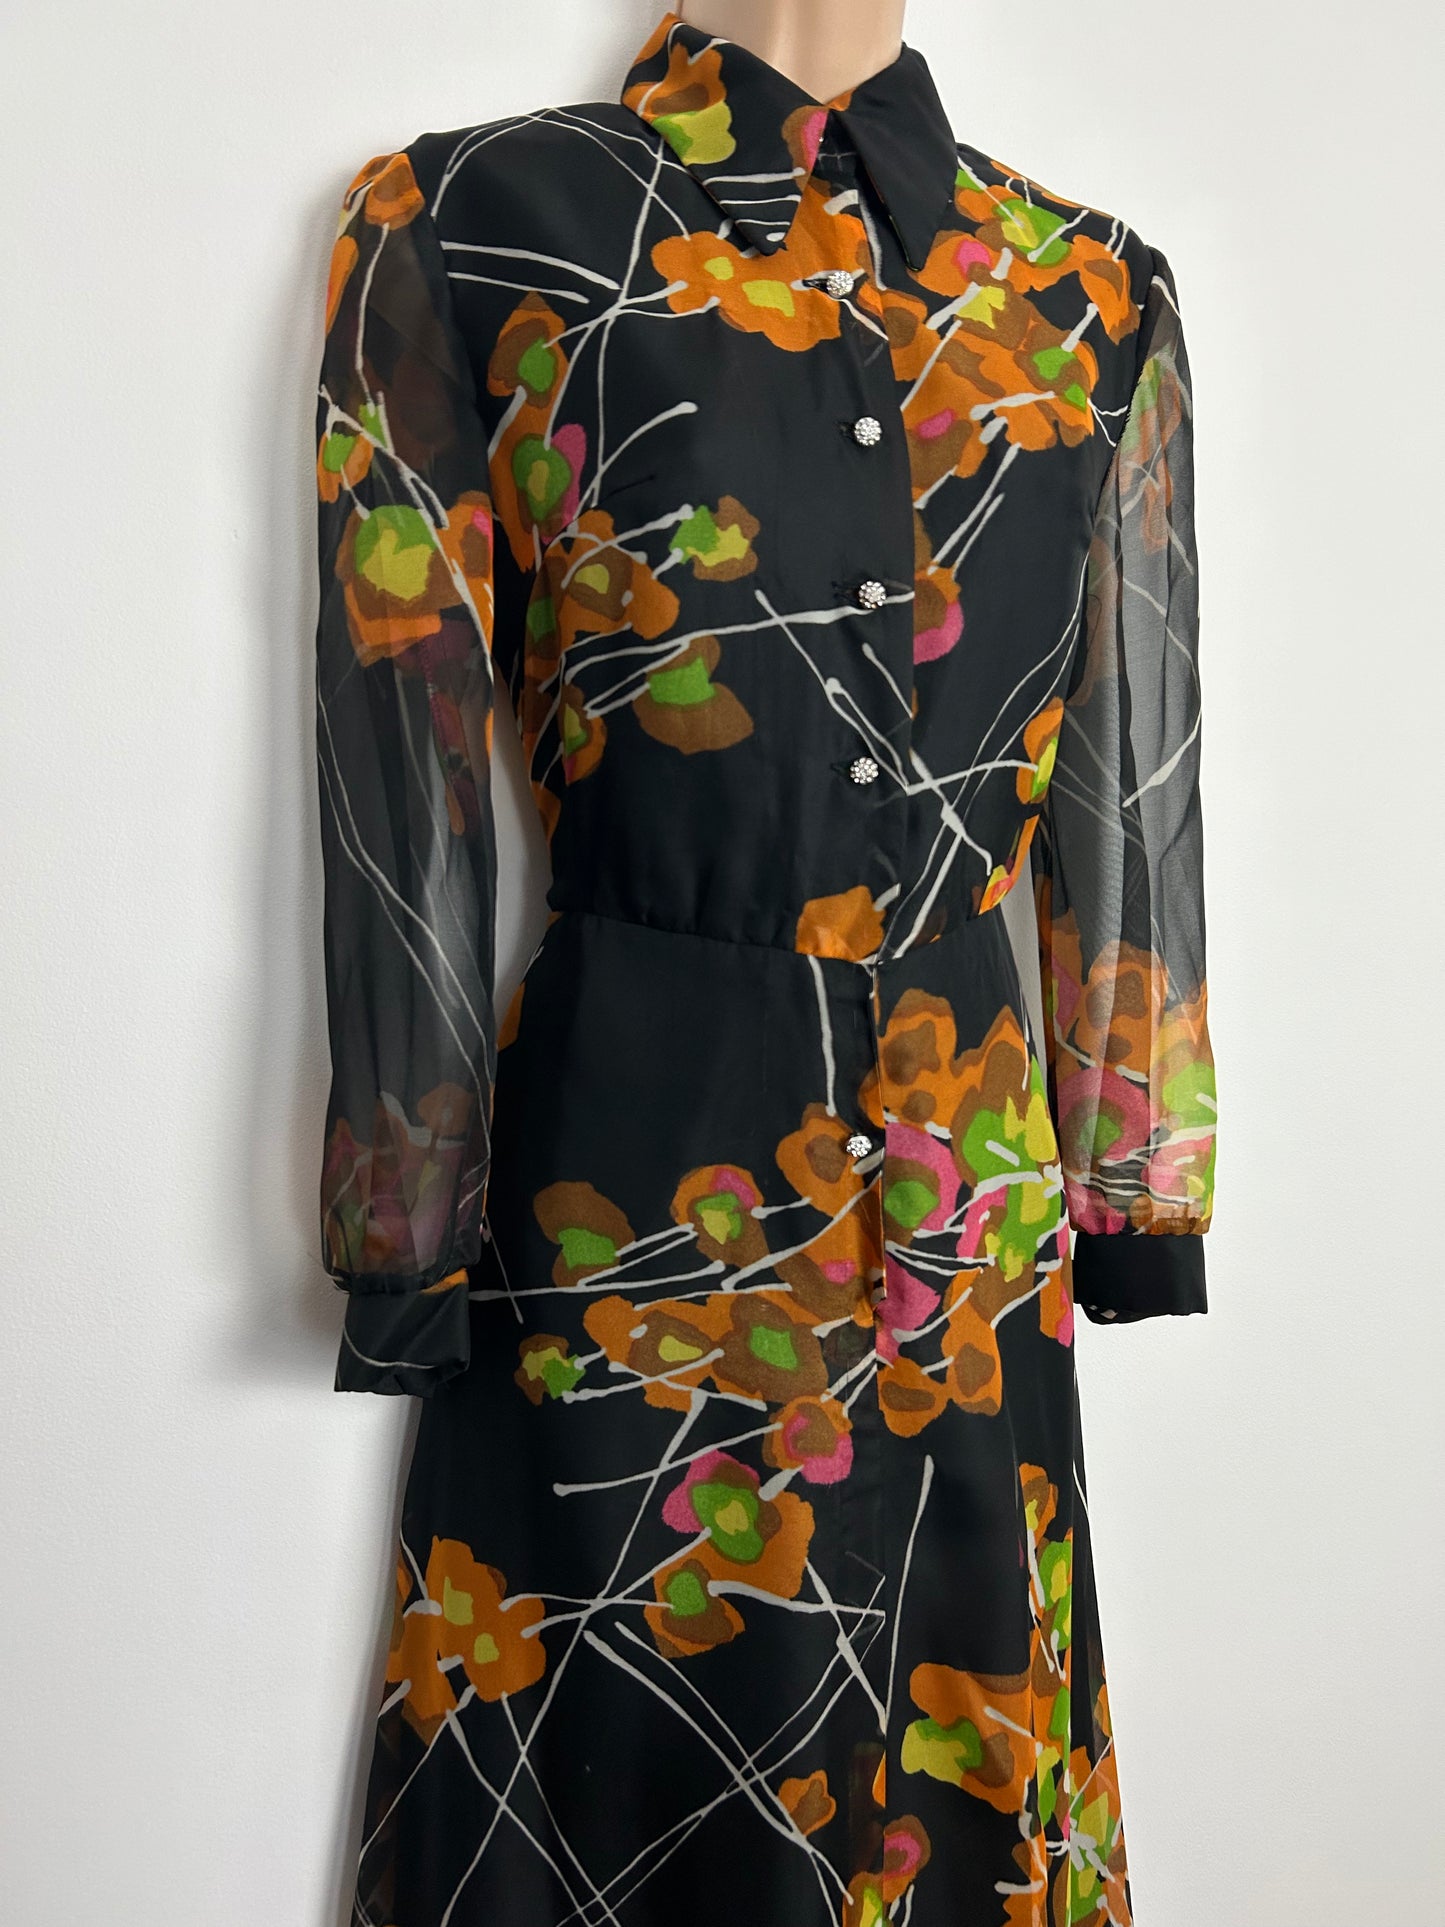 Vintage 1970s UK Size 10 Black Orange & Green Floral Print Long Sleeve Boho Maxi Dress by Verena Modelle